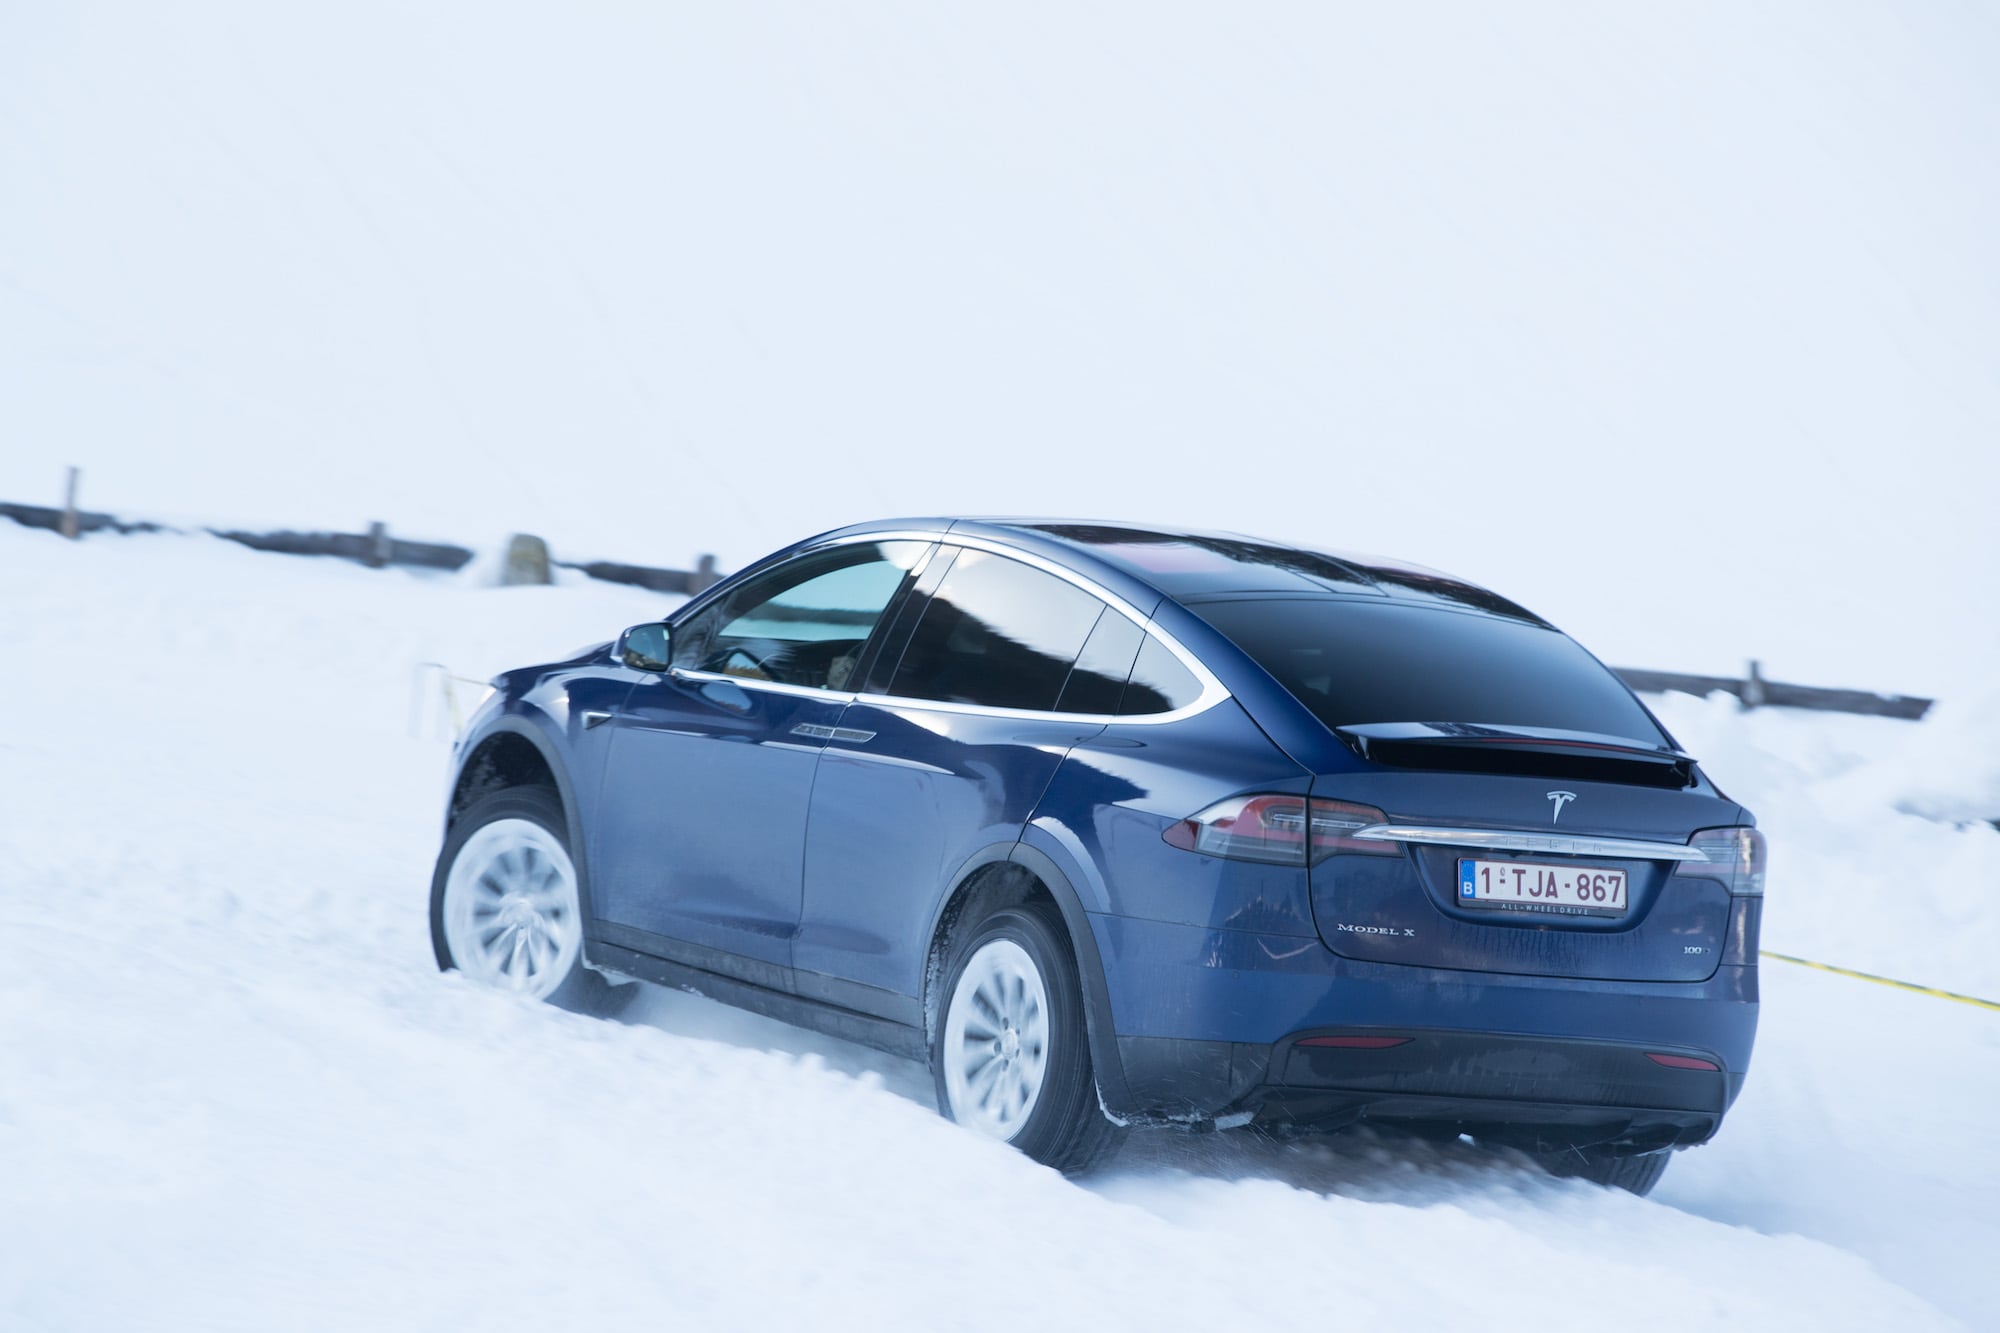 Härteprobe unter winterlichen Bedingungen: Die Tesla Winter Driving Experience 3